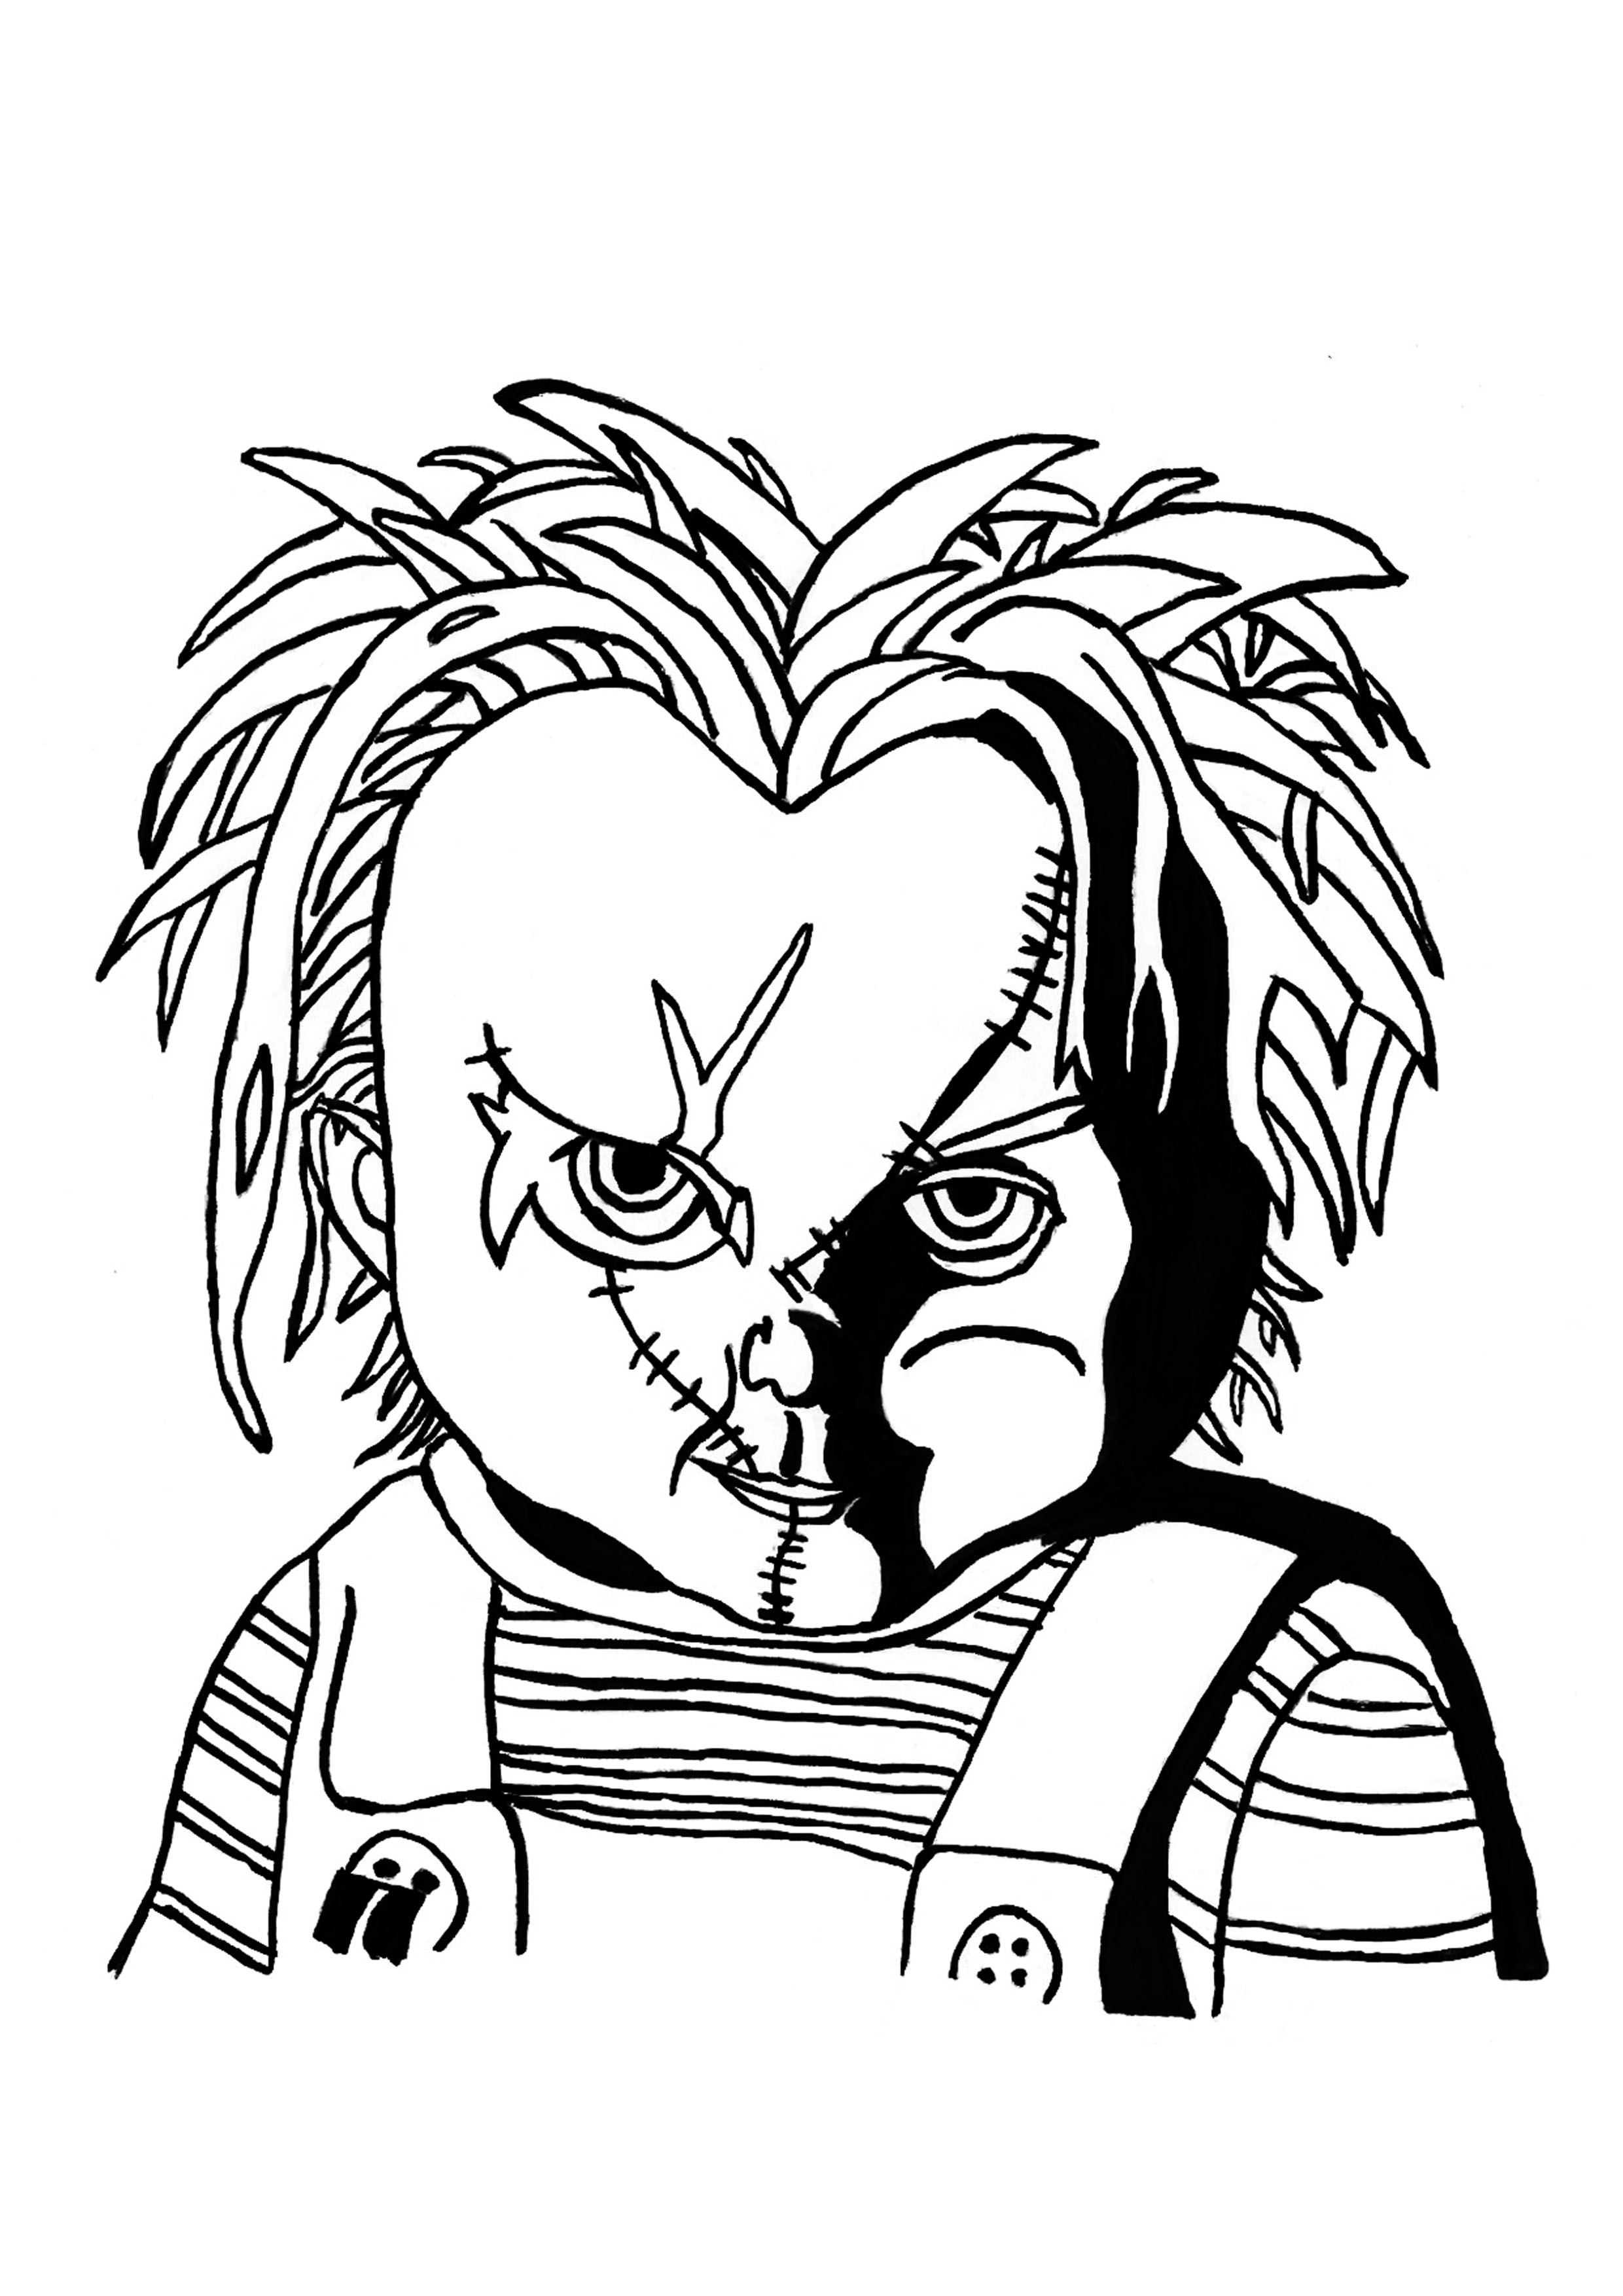 Retrato do assustador boneco Chucky, para colorir no Dia das Bruxas